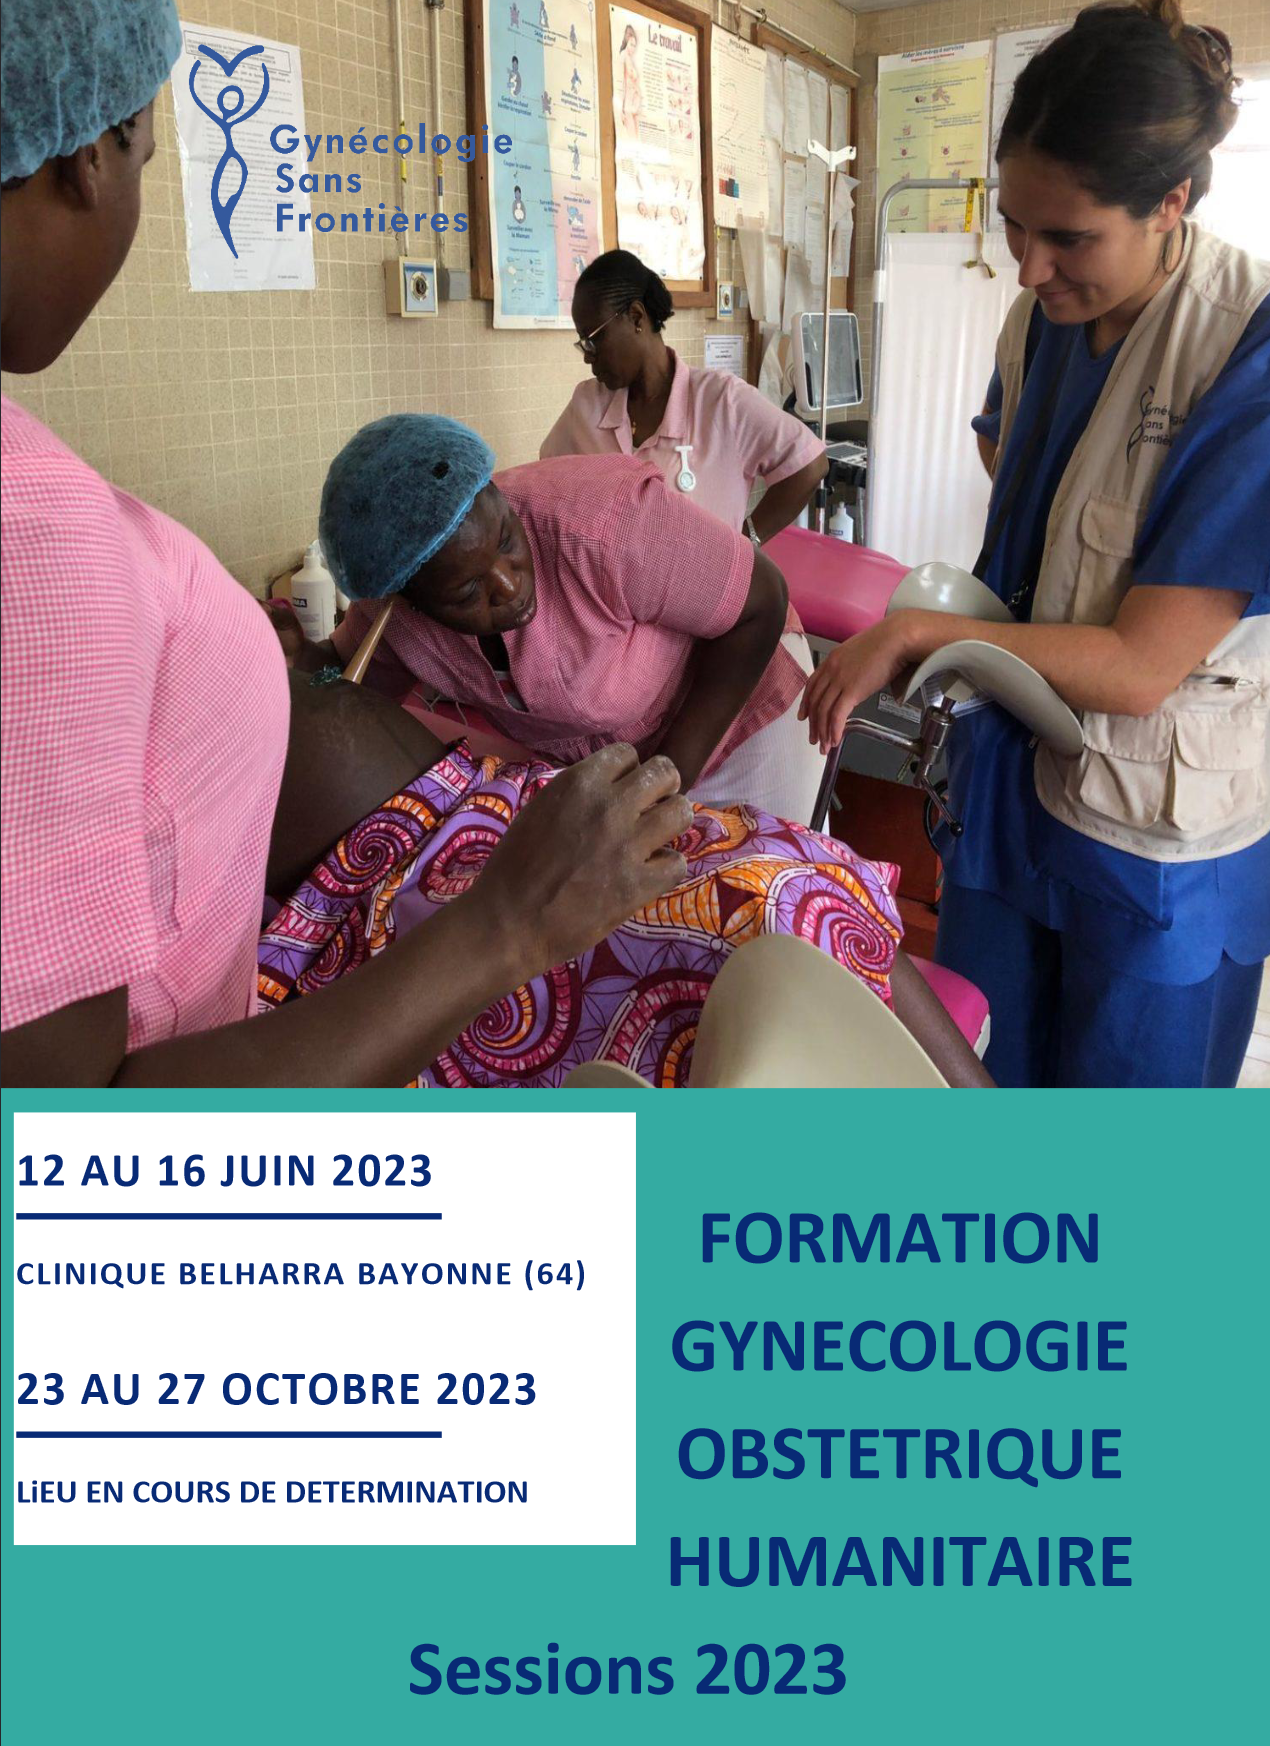 Formation Gynécologie Obstétrique Humanitaire (FGOH) – Sessions 2023 : les inscriptions sont ouvertes